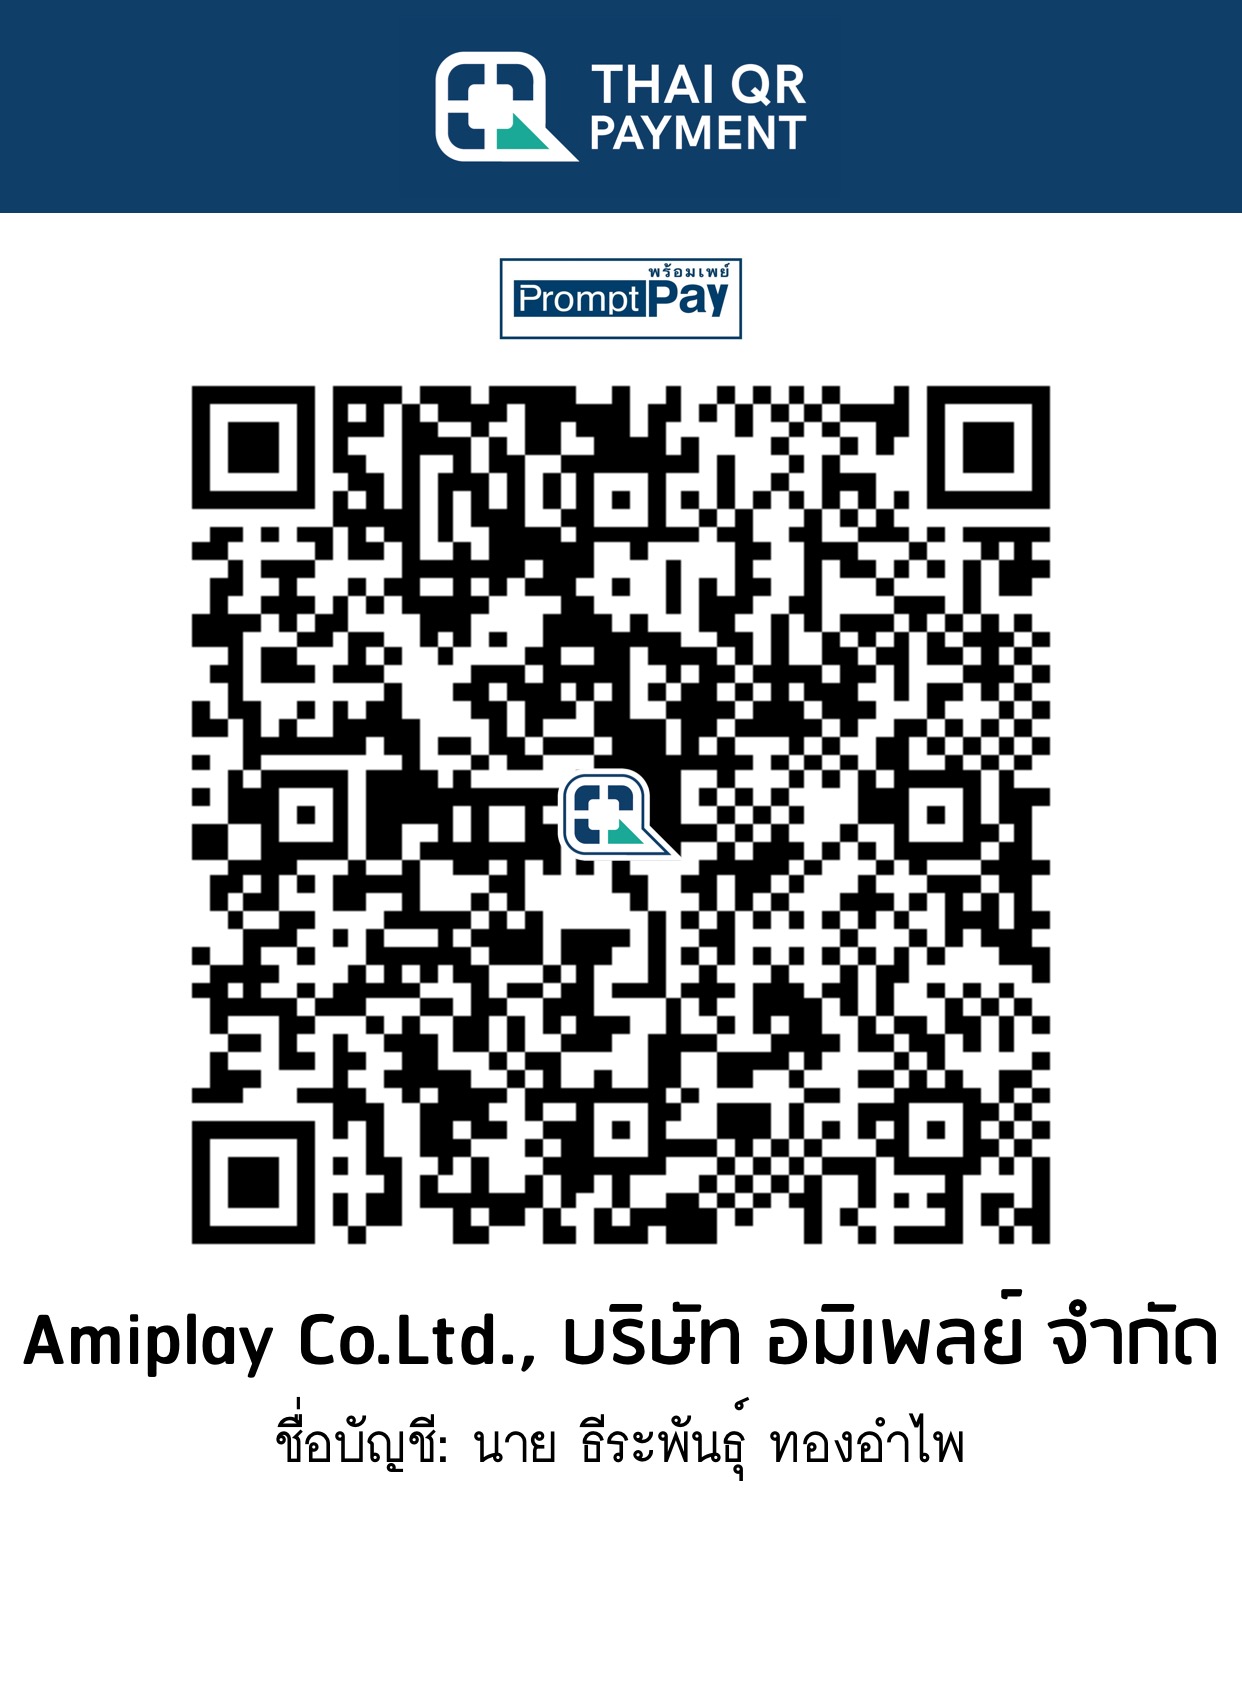 Amiplay QR Code - Kasikorn Bank